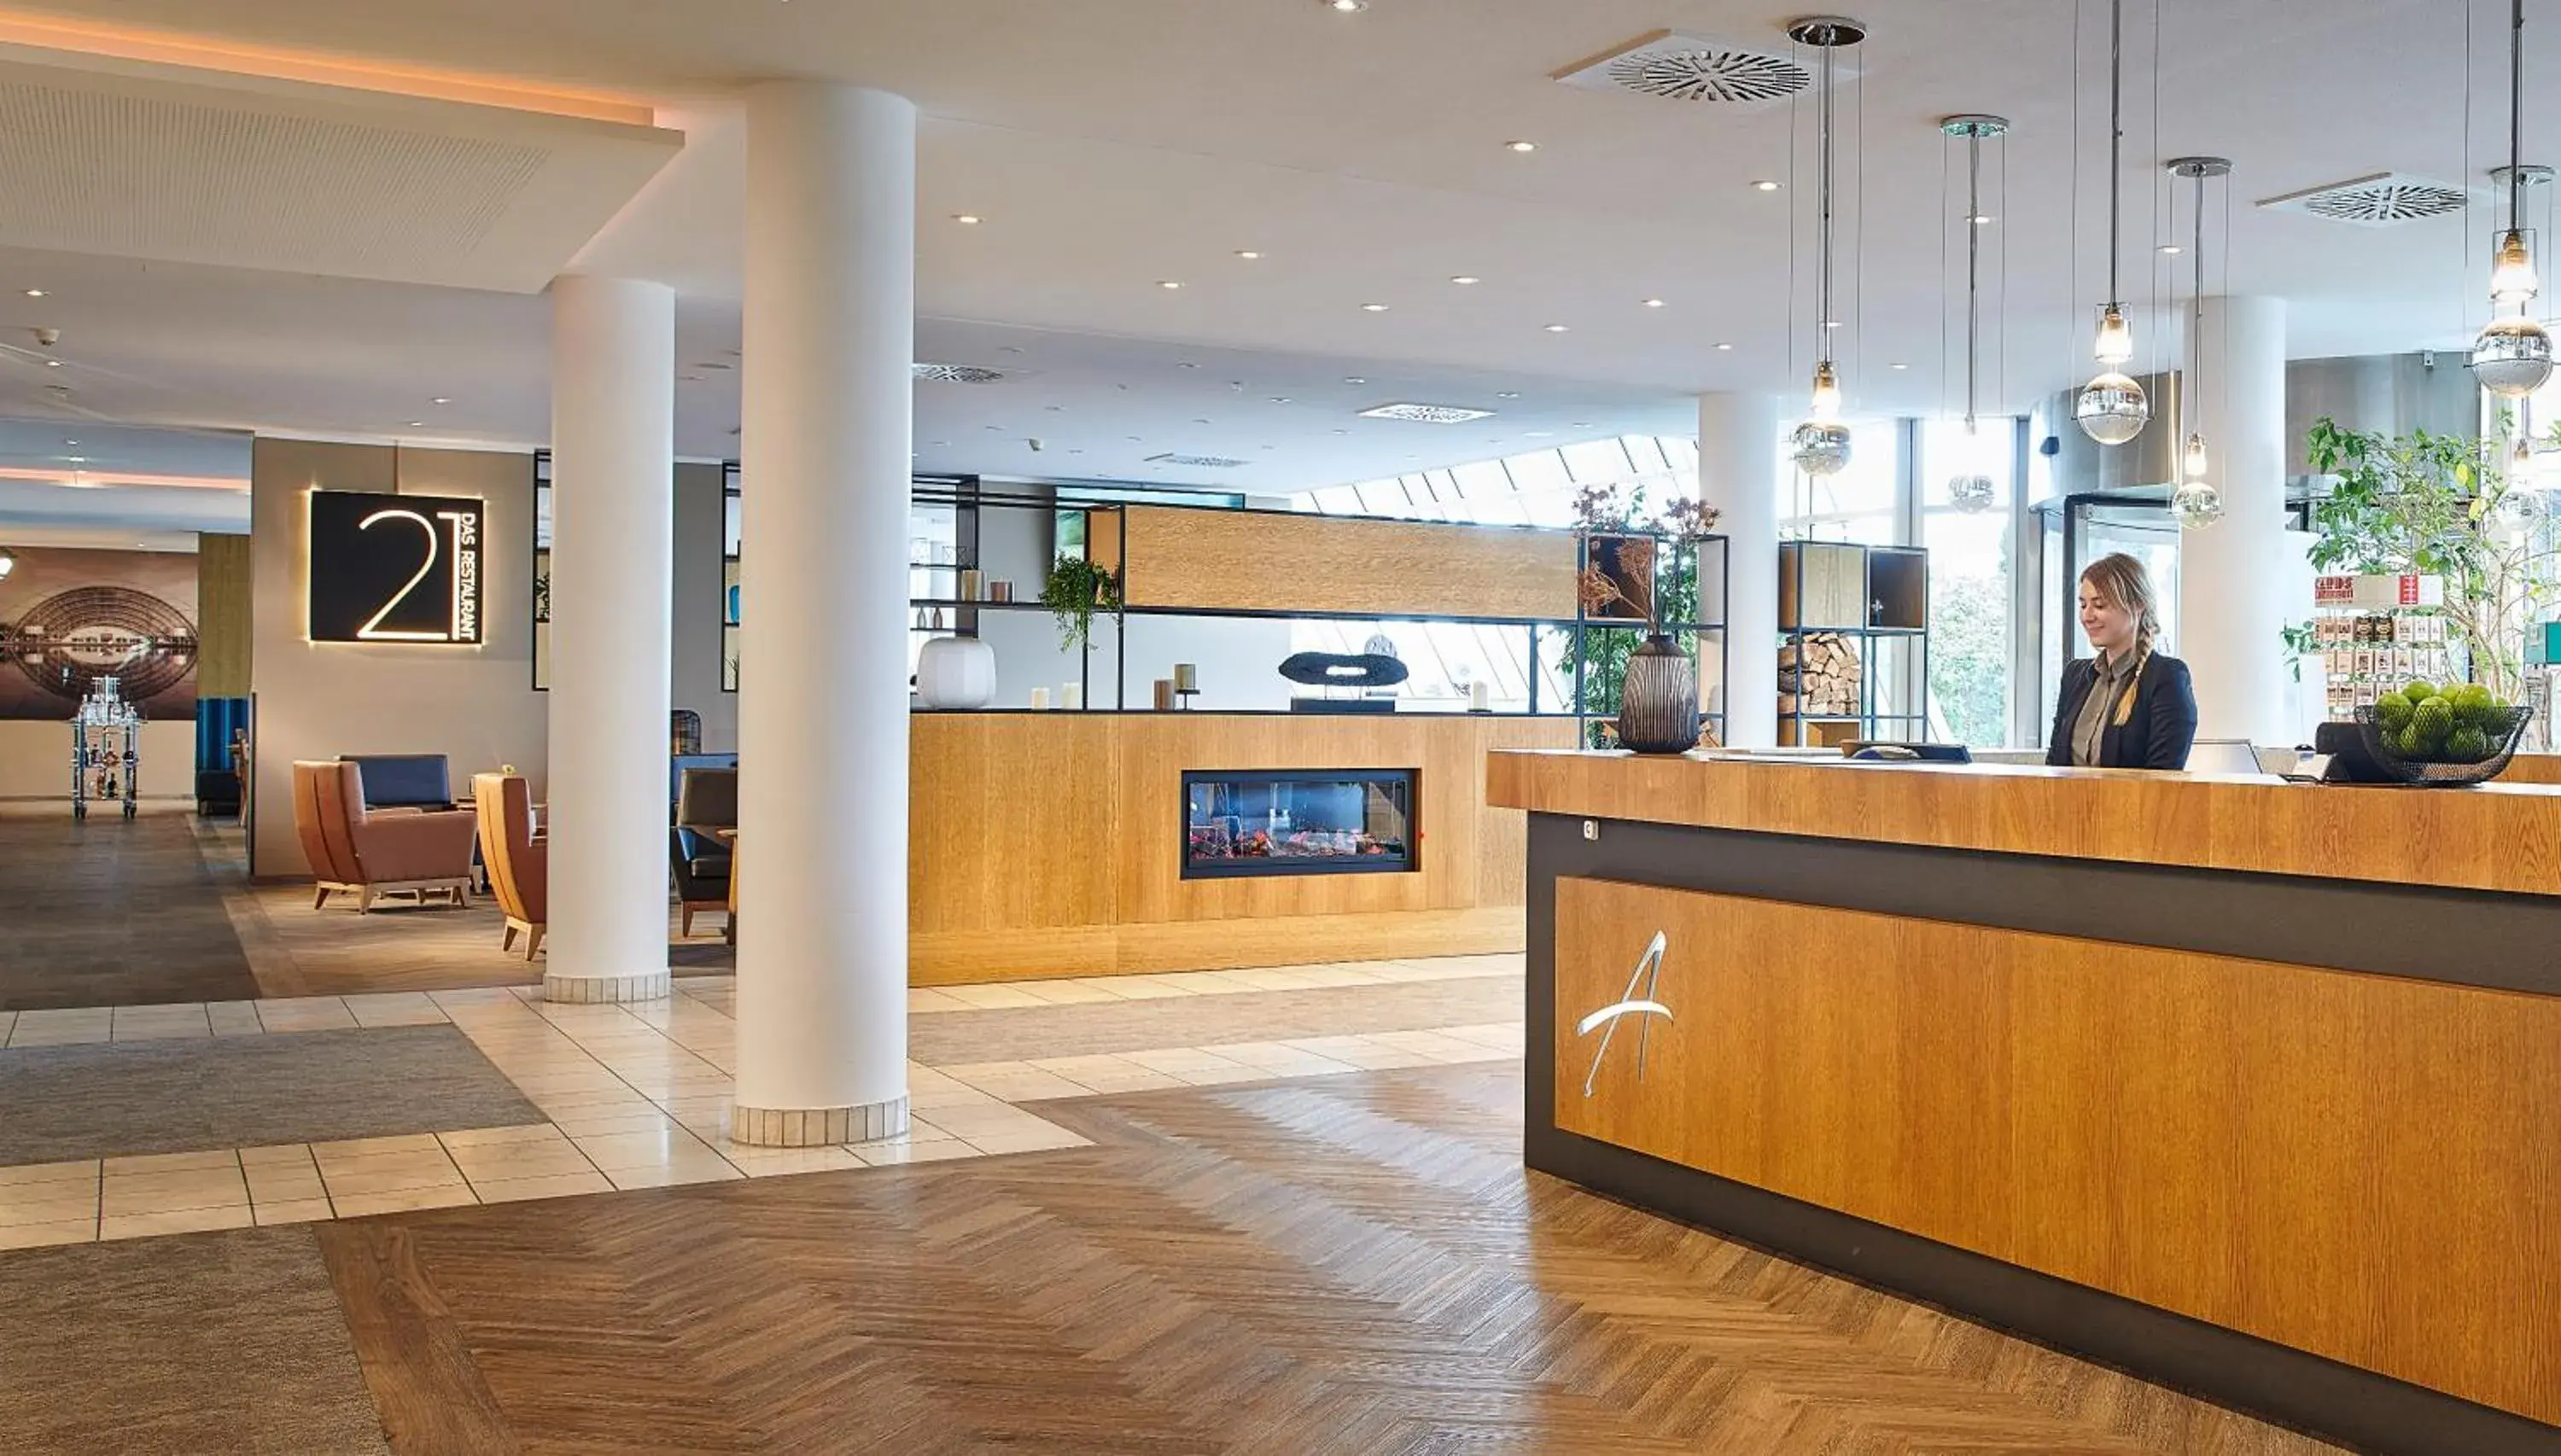 Lobby or reception, Lobby/Reception in Atlanta Hotel International Leipzig